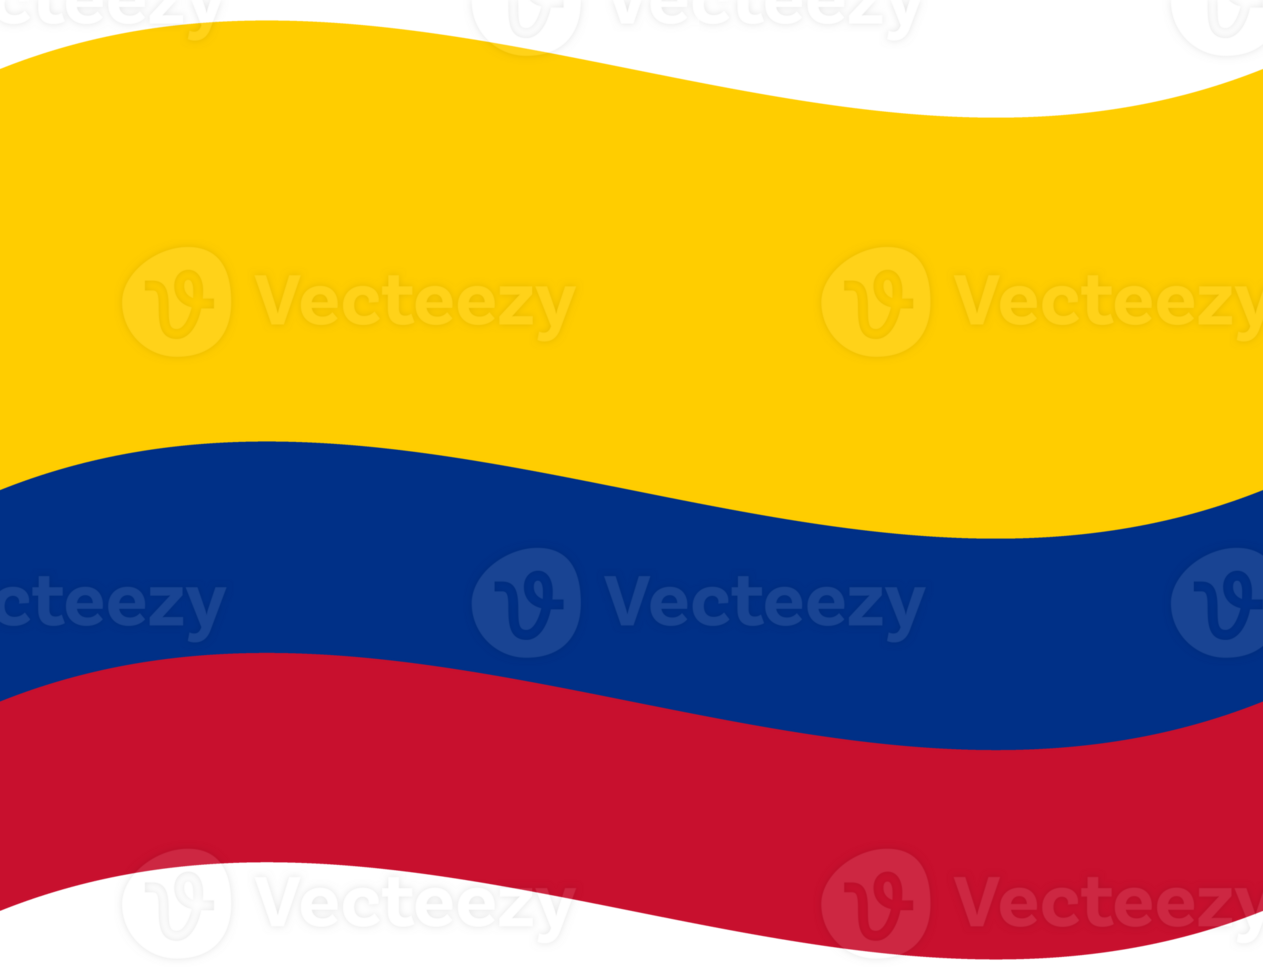 bandera de Colombia. Colombia bandera ola. Colombia bandera png